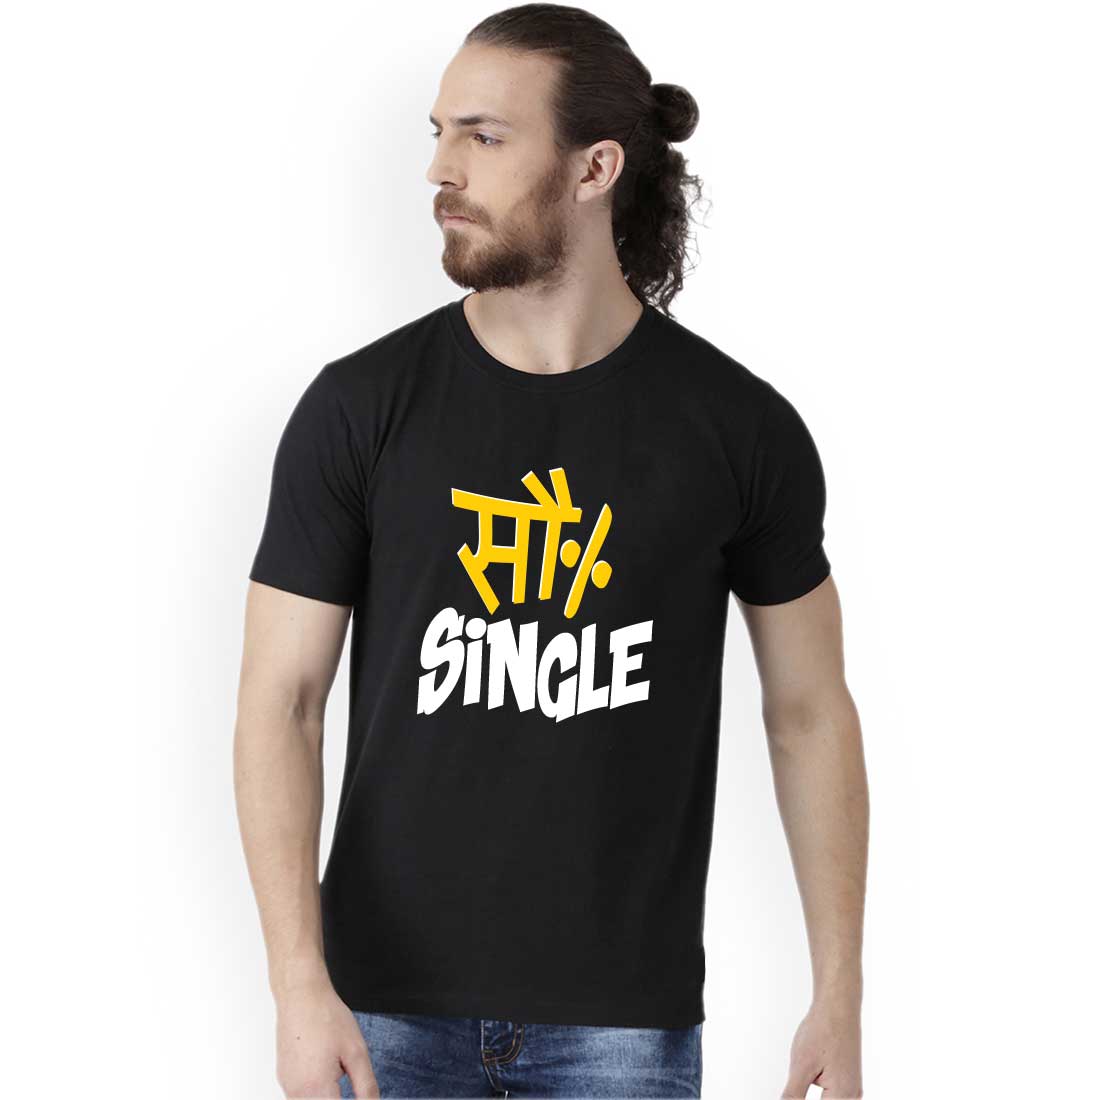 So Percent Single Black Men T-Shirt